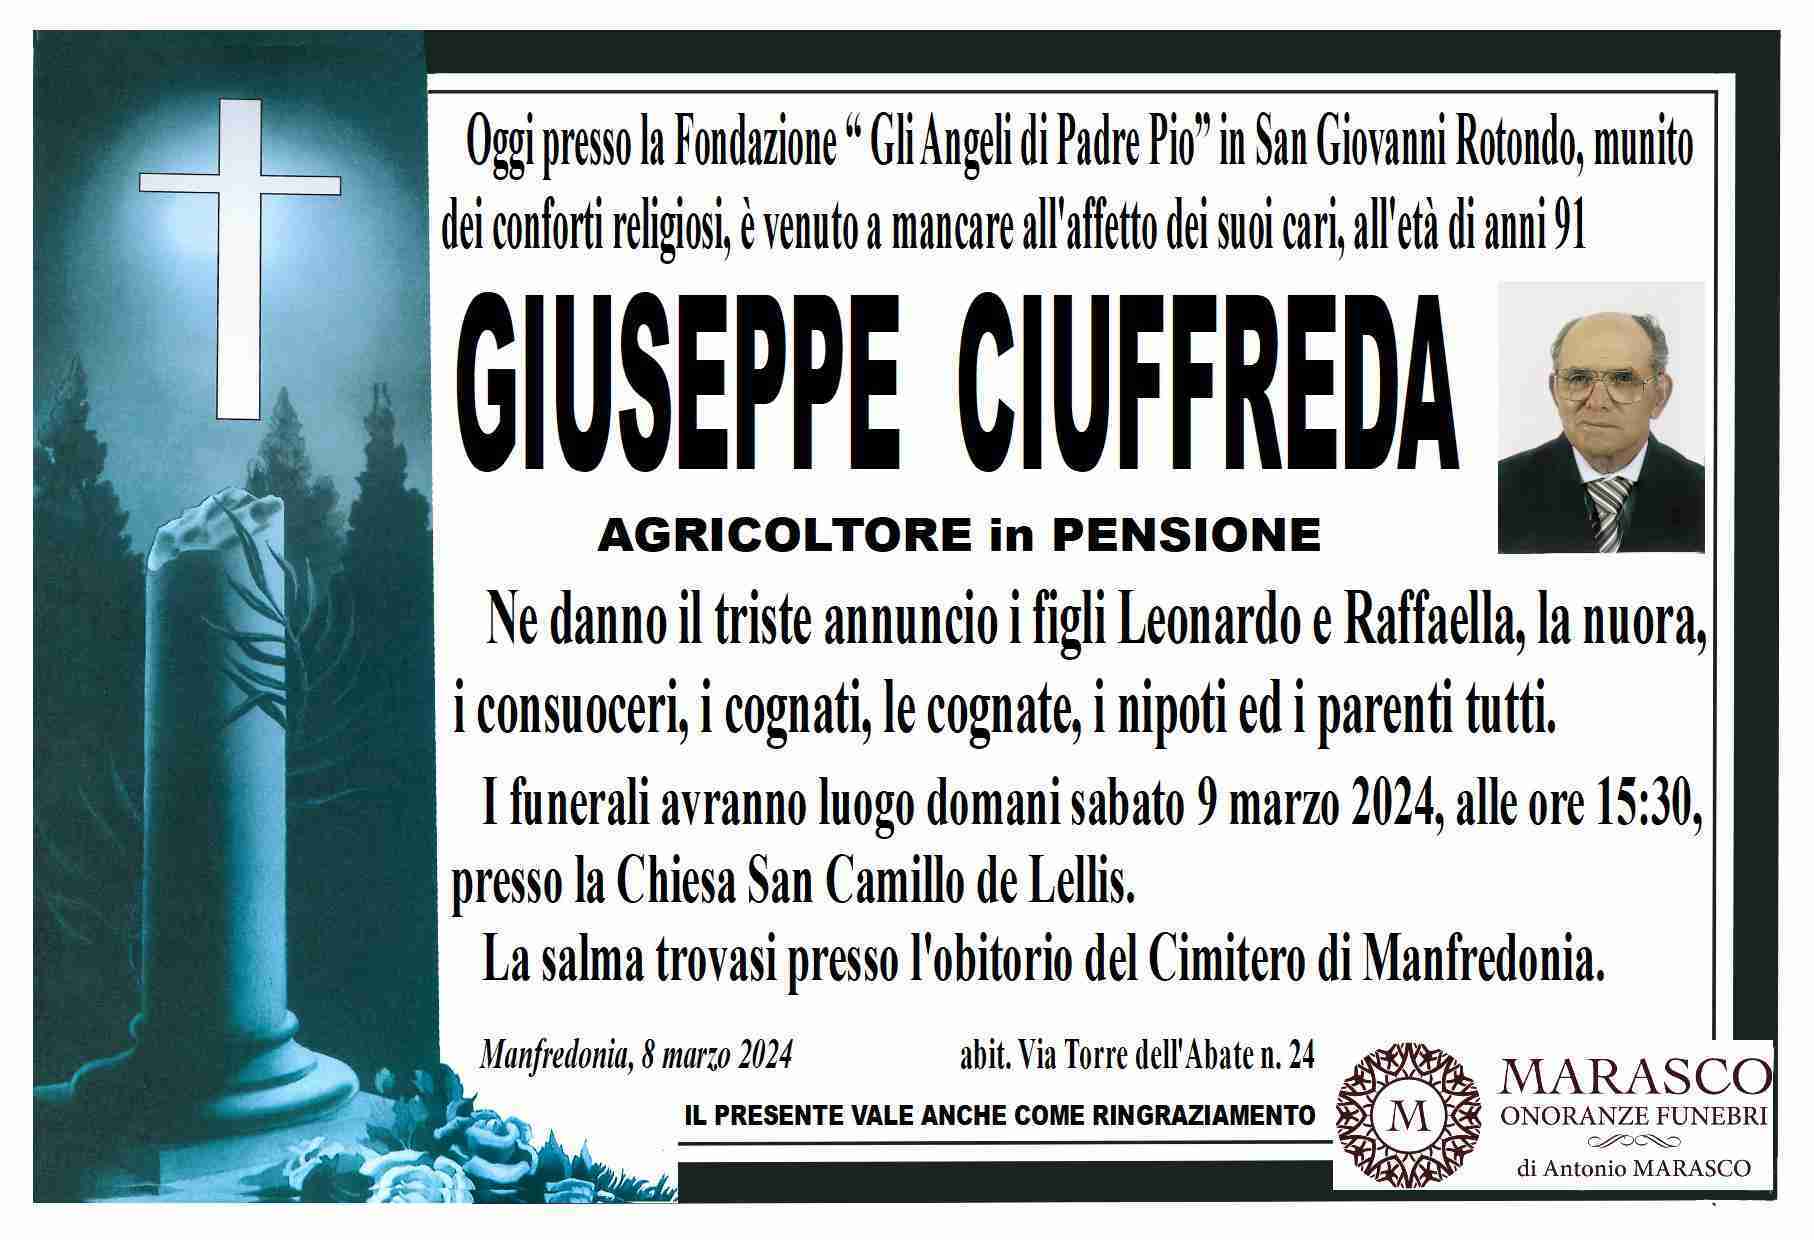 Giuseppe Ciuffreda